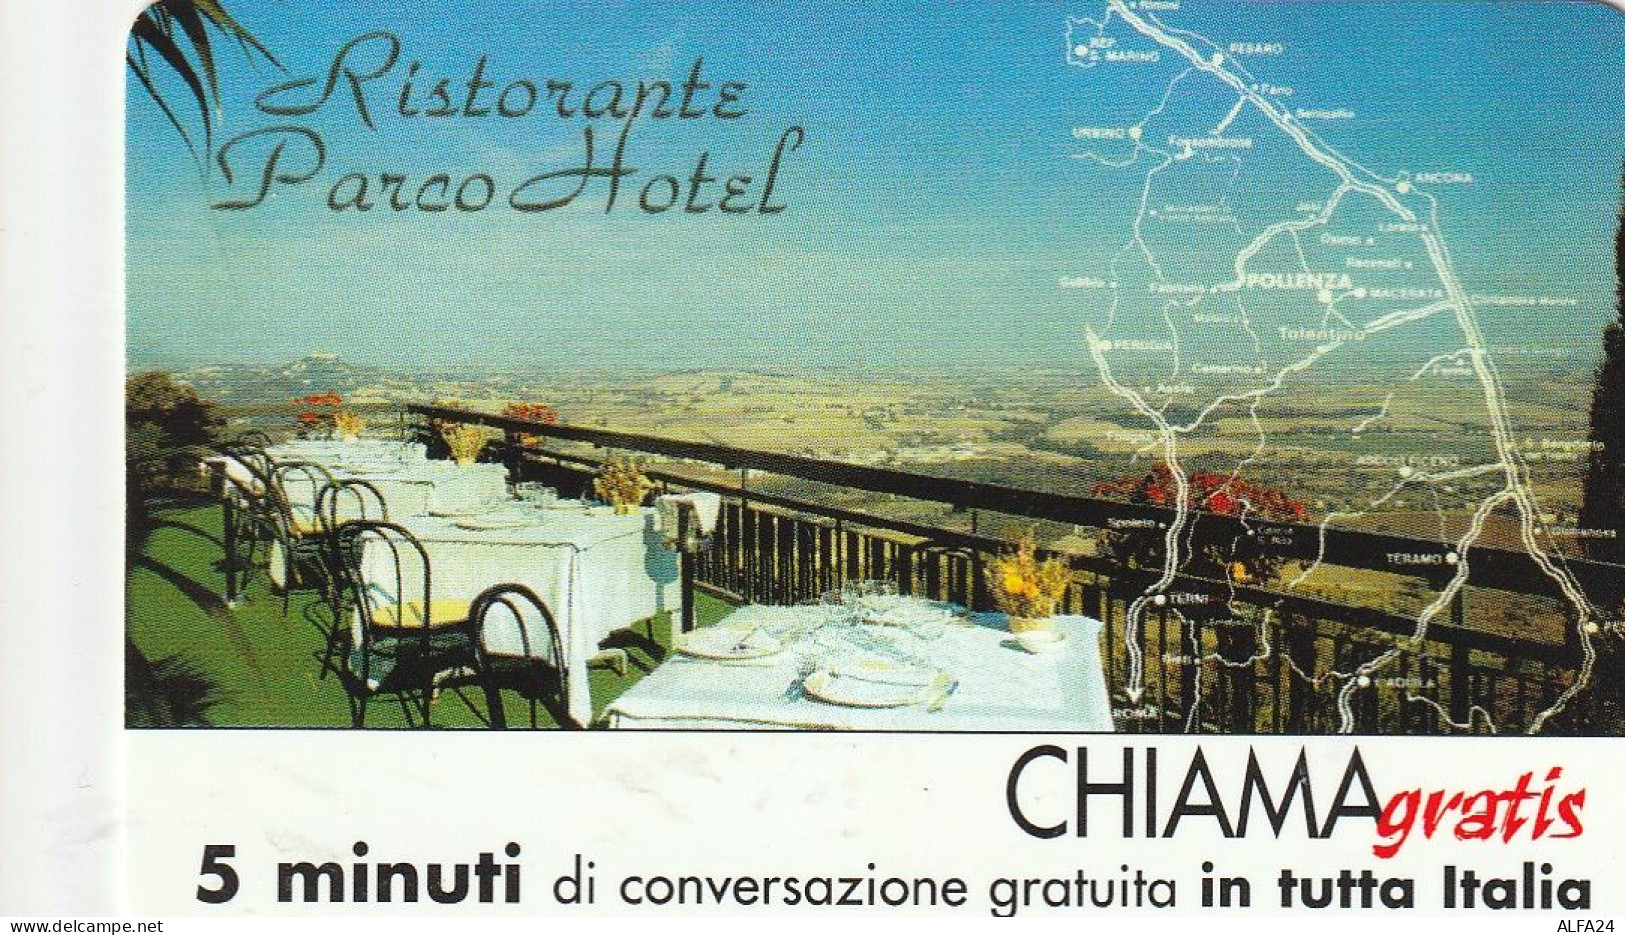 CHIAMAGRATIS MASTER/PROTOTIPO 574 RIST PARCO HOTEL  (CV1759 - Private-Omaggi